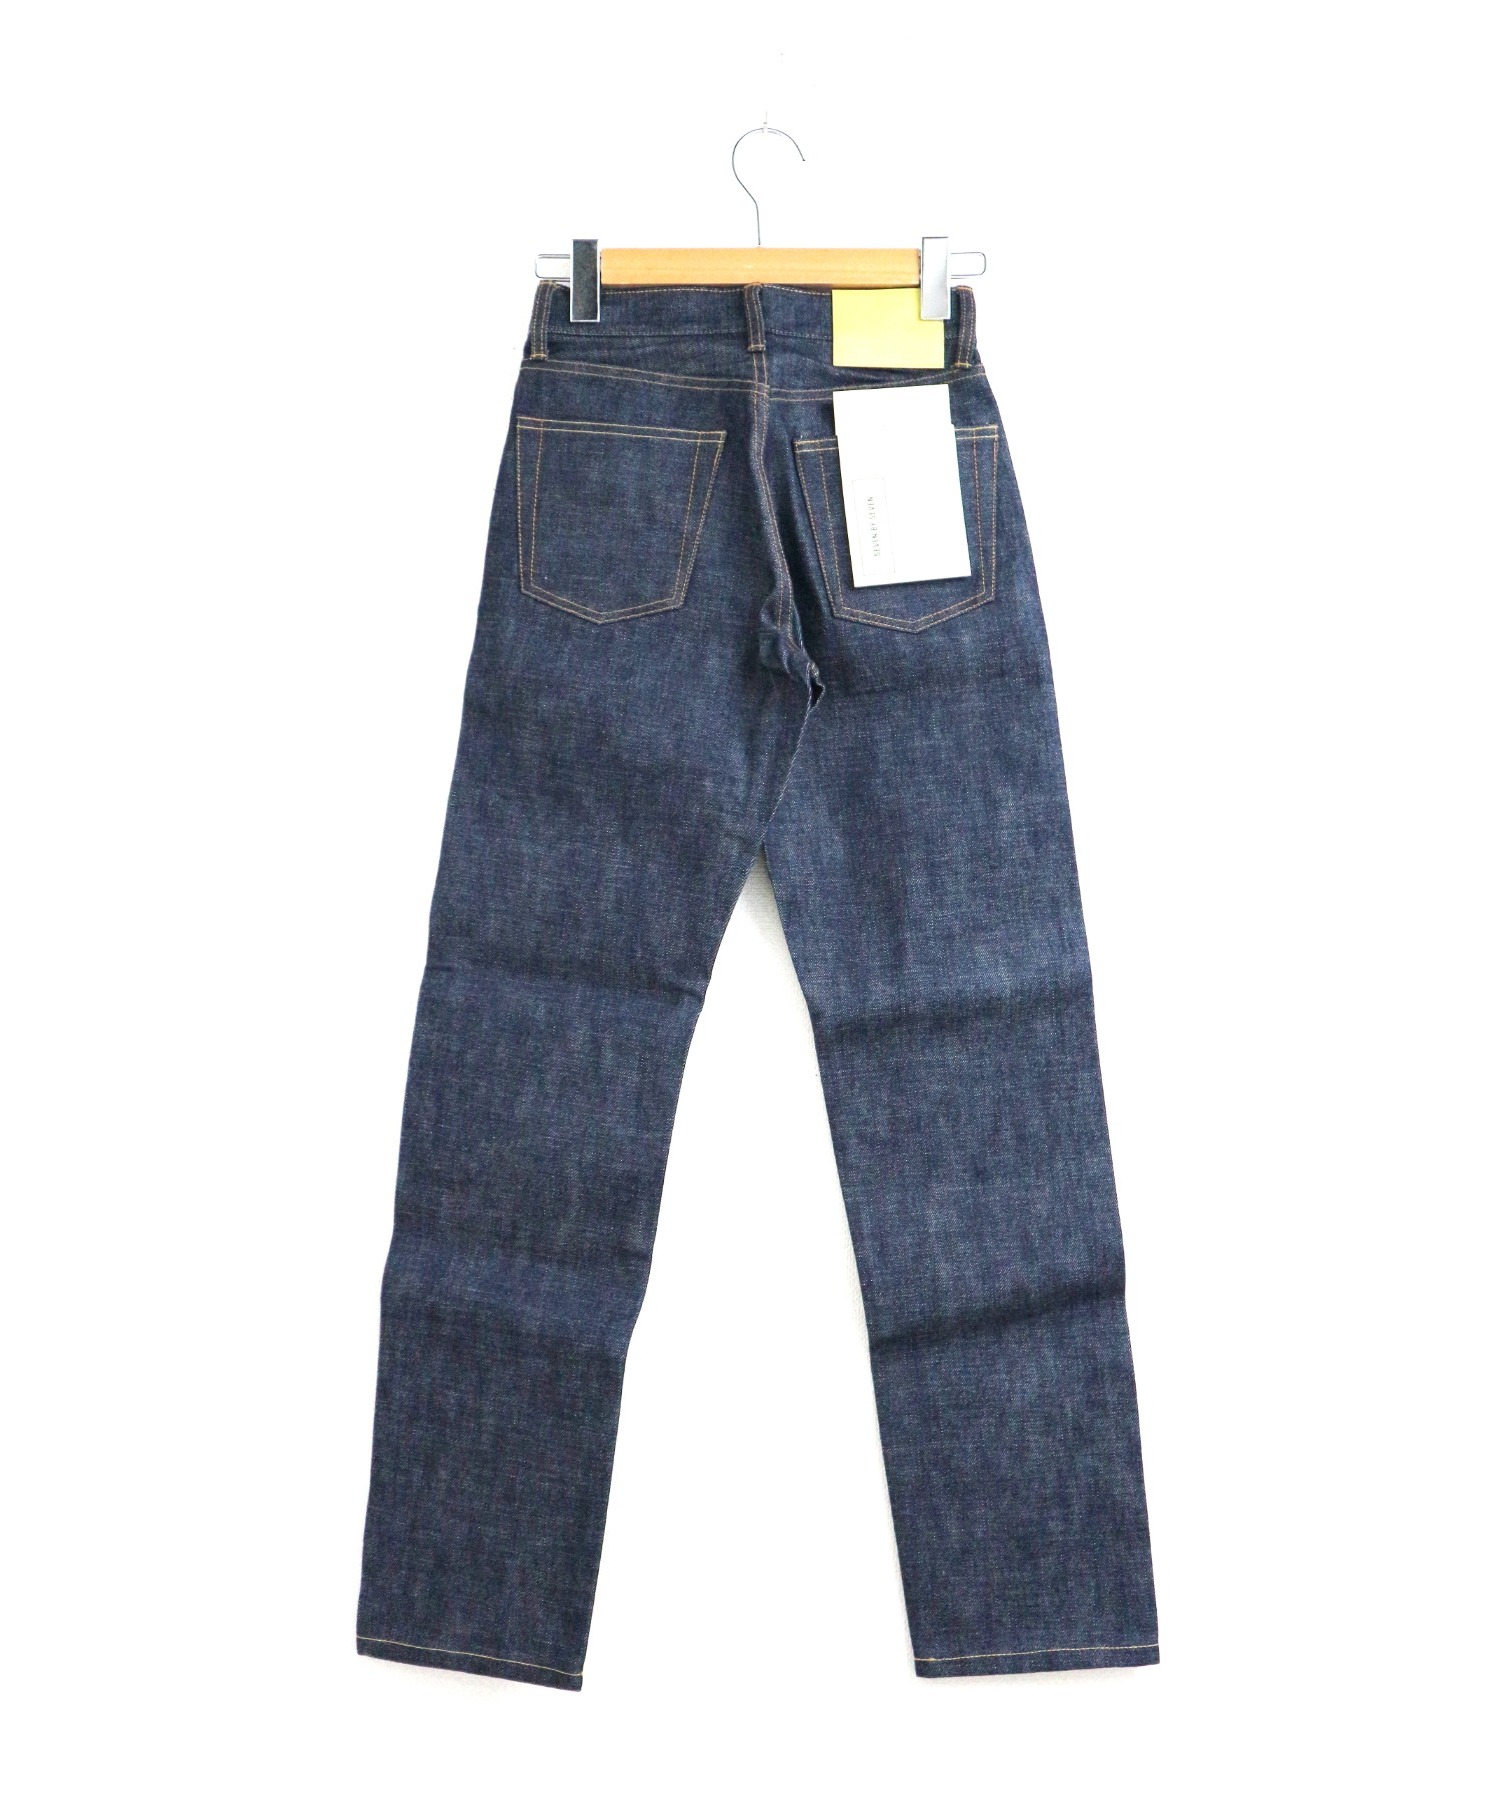 seven by seven (セブンバイセブン) リジットデニム インディゴ サイズ:W25 未使用品 straight jeans-rigid